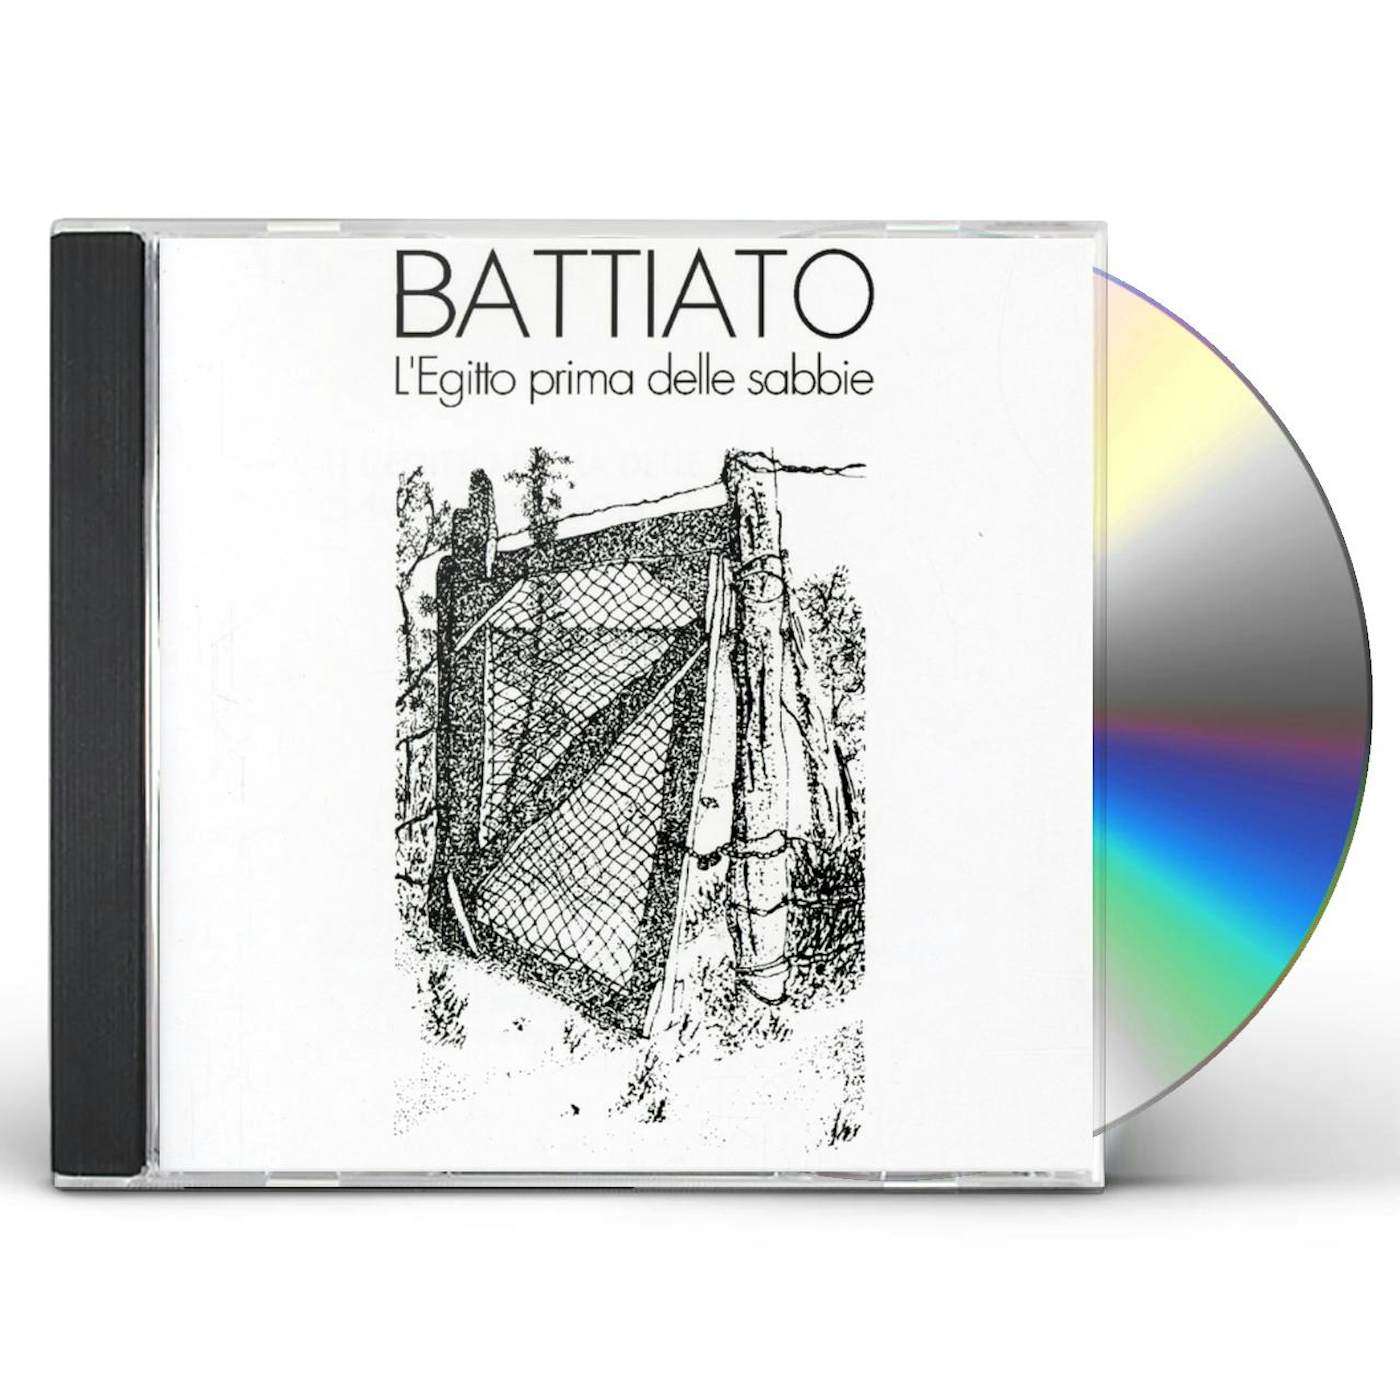 Franco Battiato LEGITTO PRIMA DELLE SABBIE CD